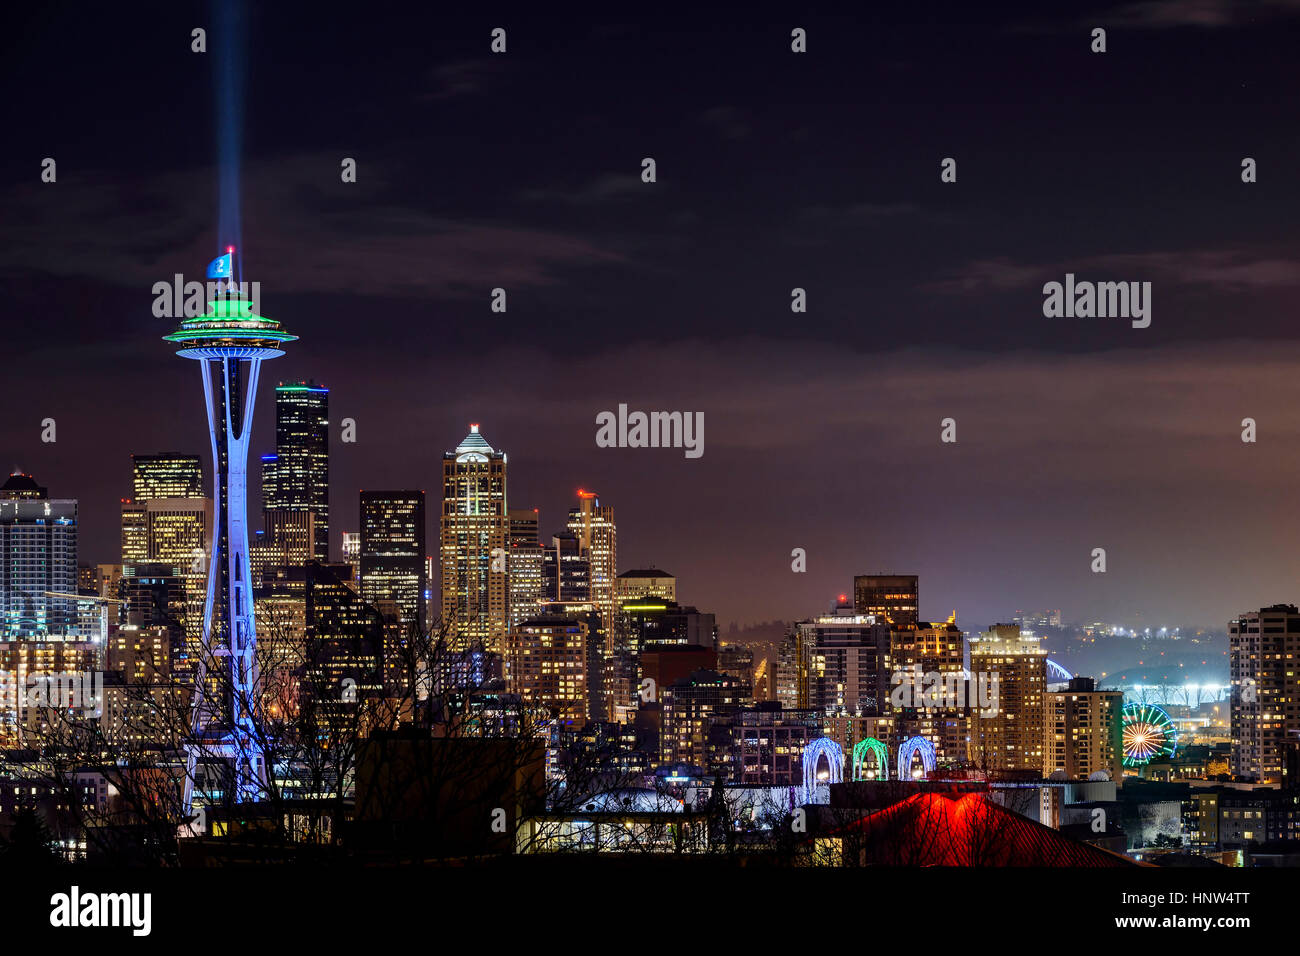 Illuminated cityscape, Seattle, Washington, United States Stock Photo